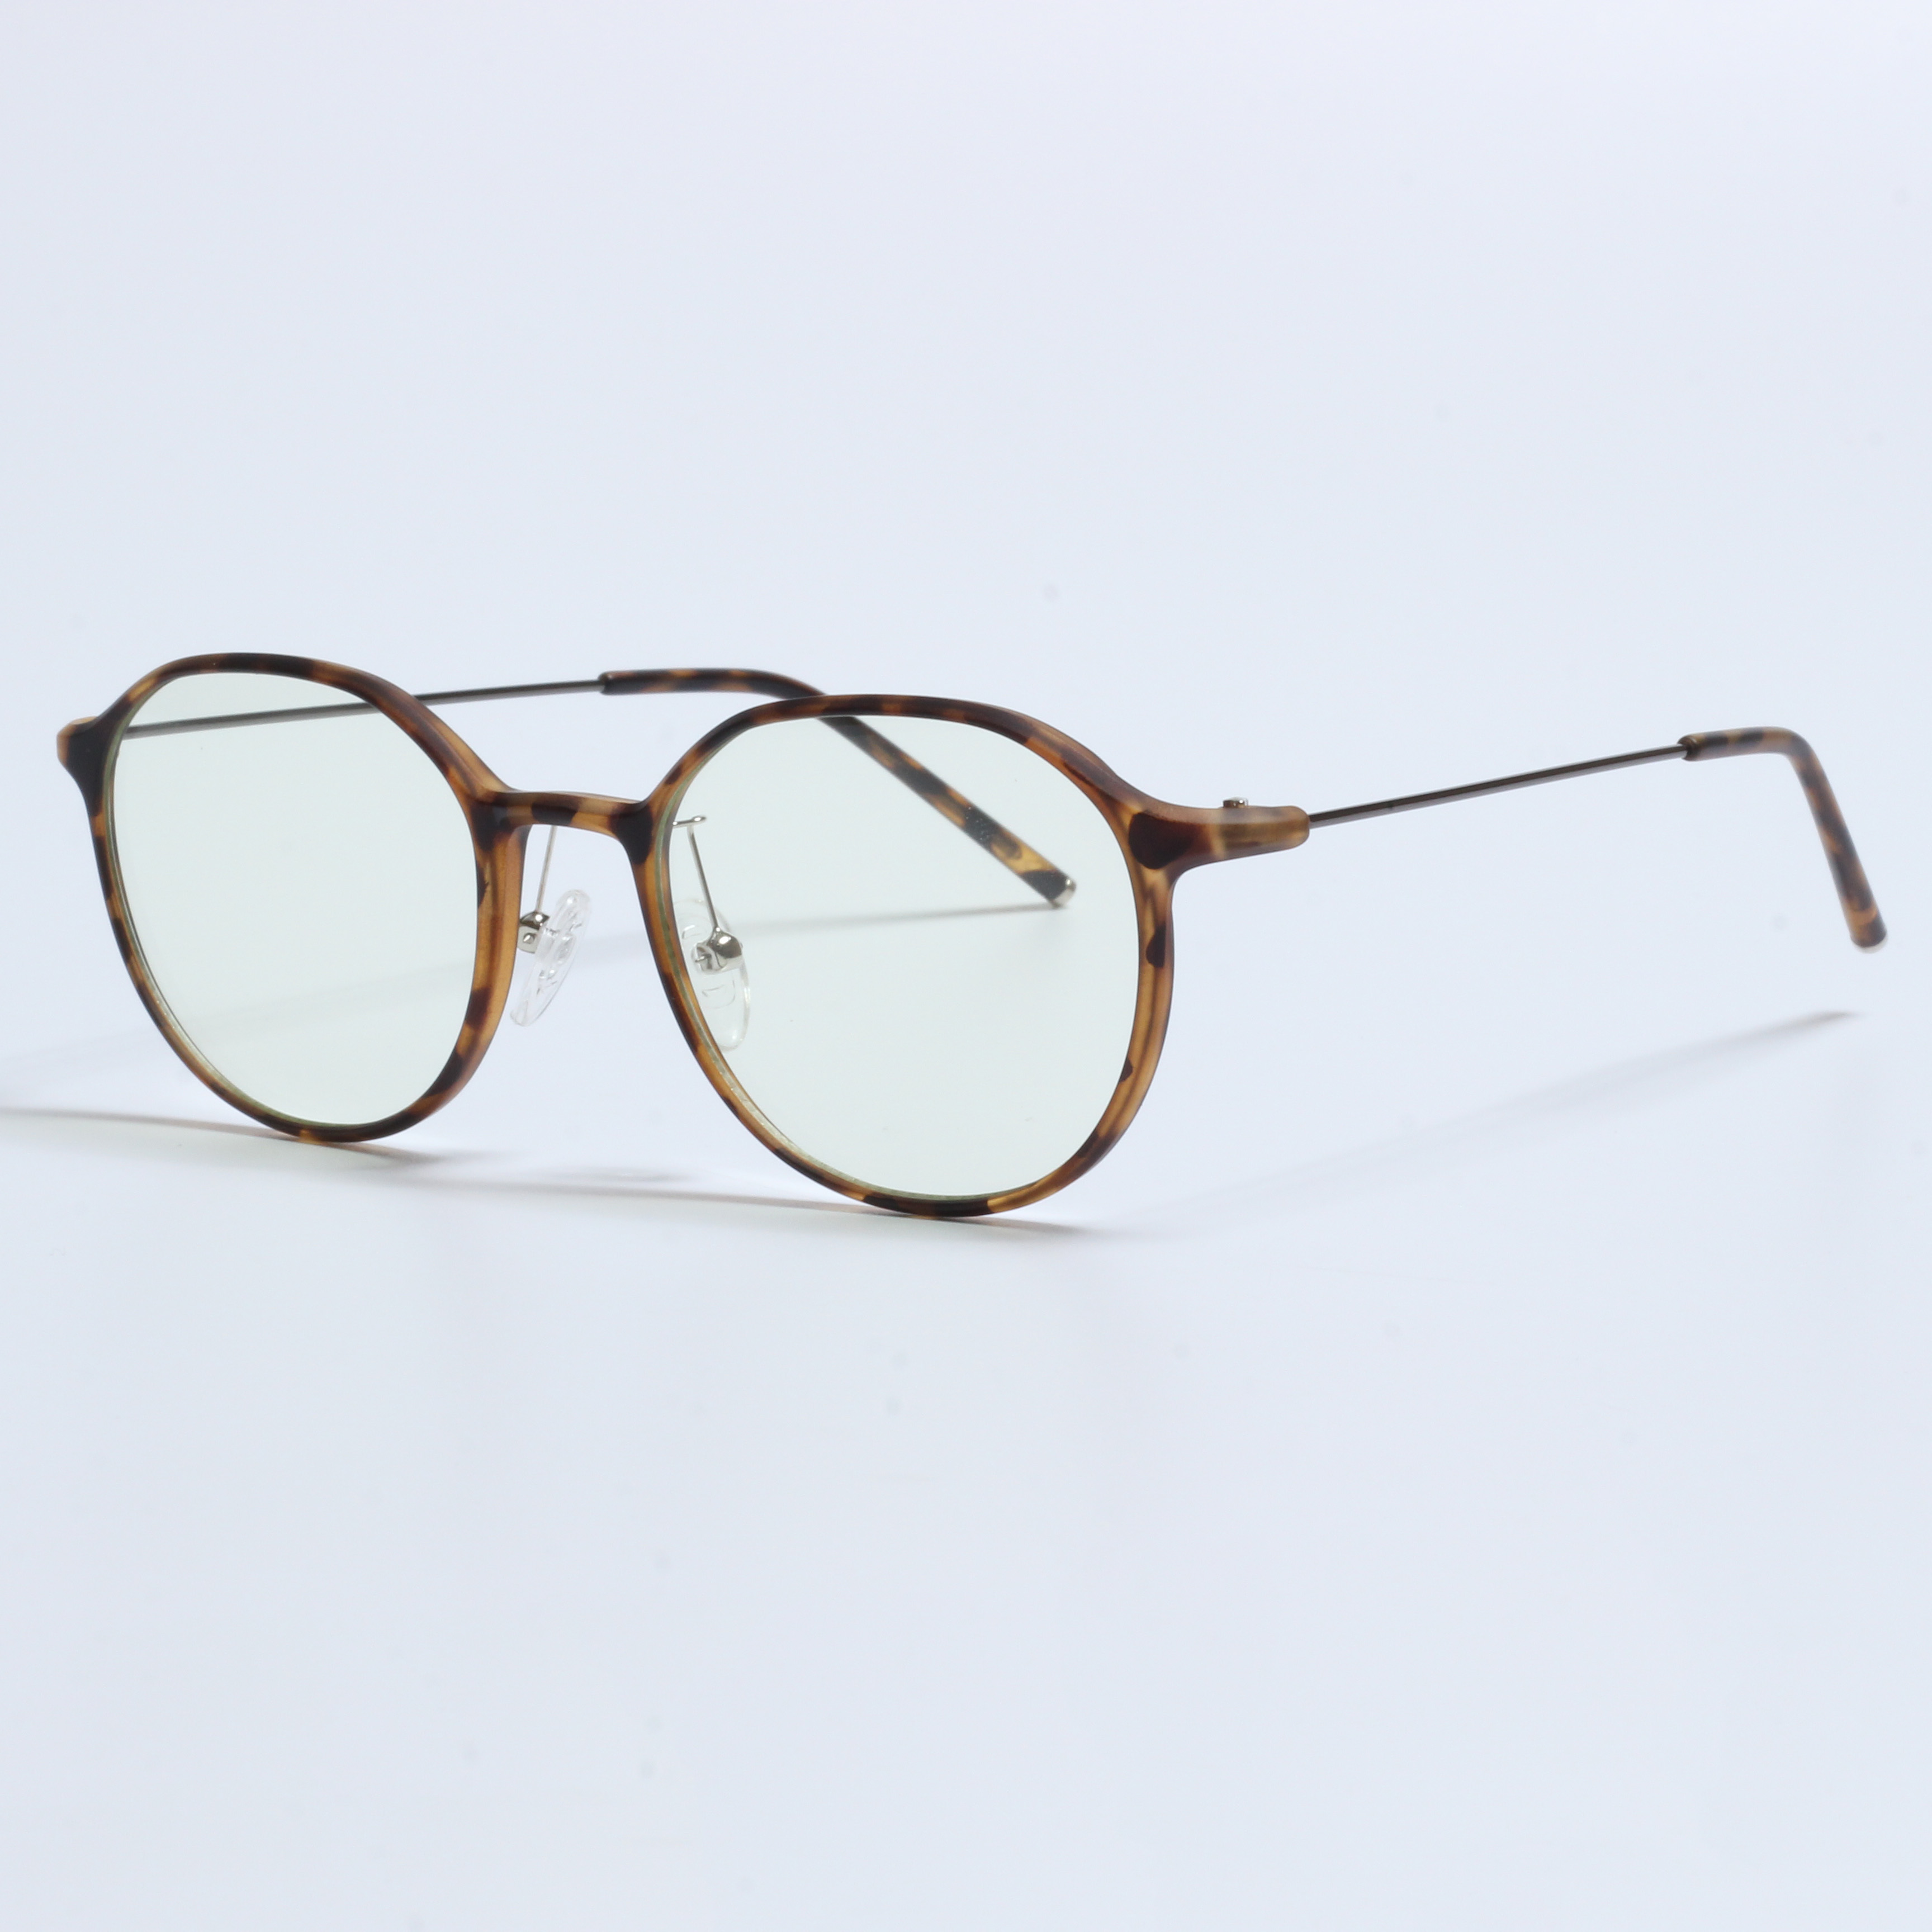 Cadres Vintage épais Gafas Opticas De Hombres Transparent TR90 (6)